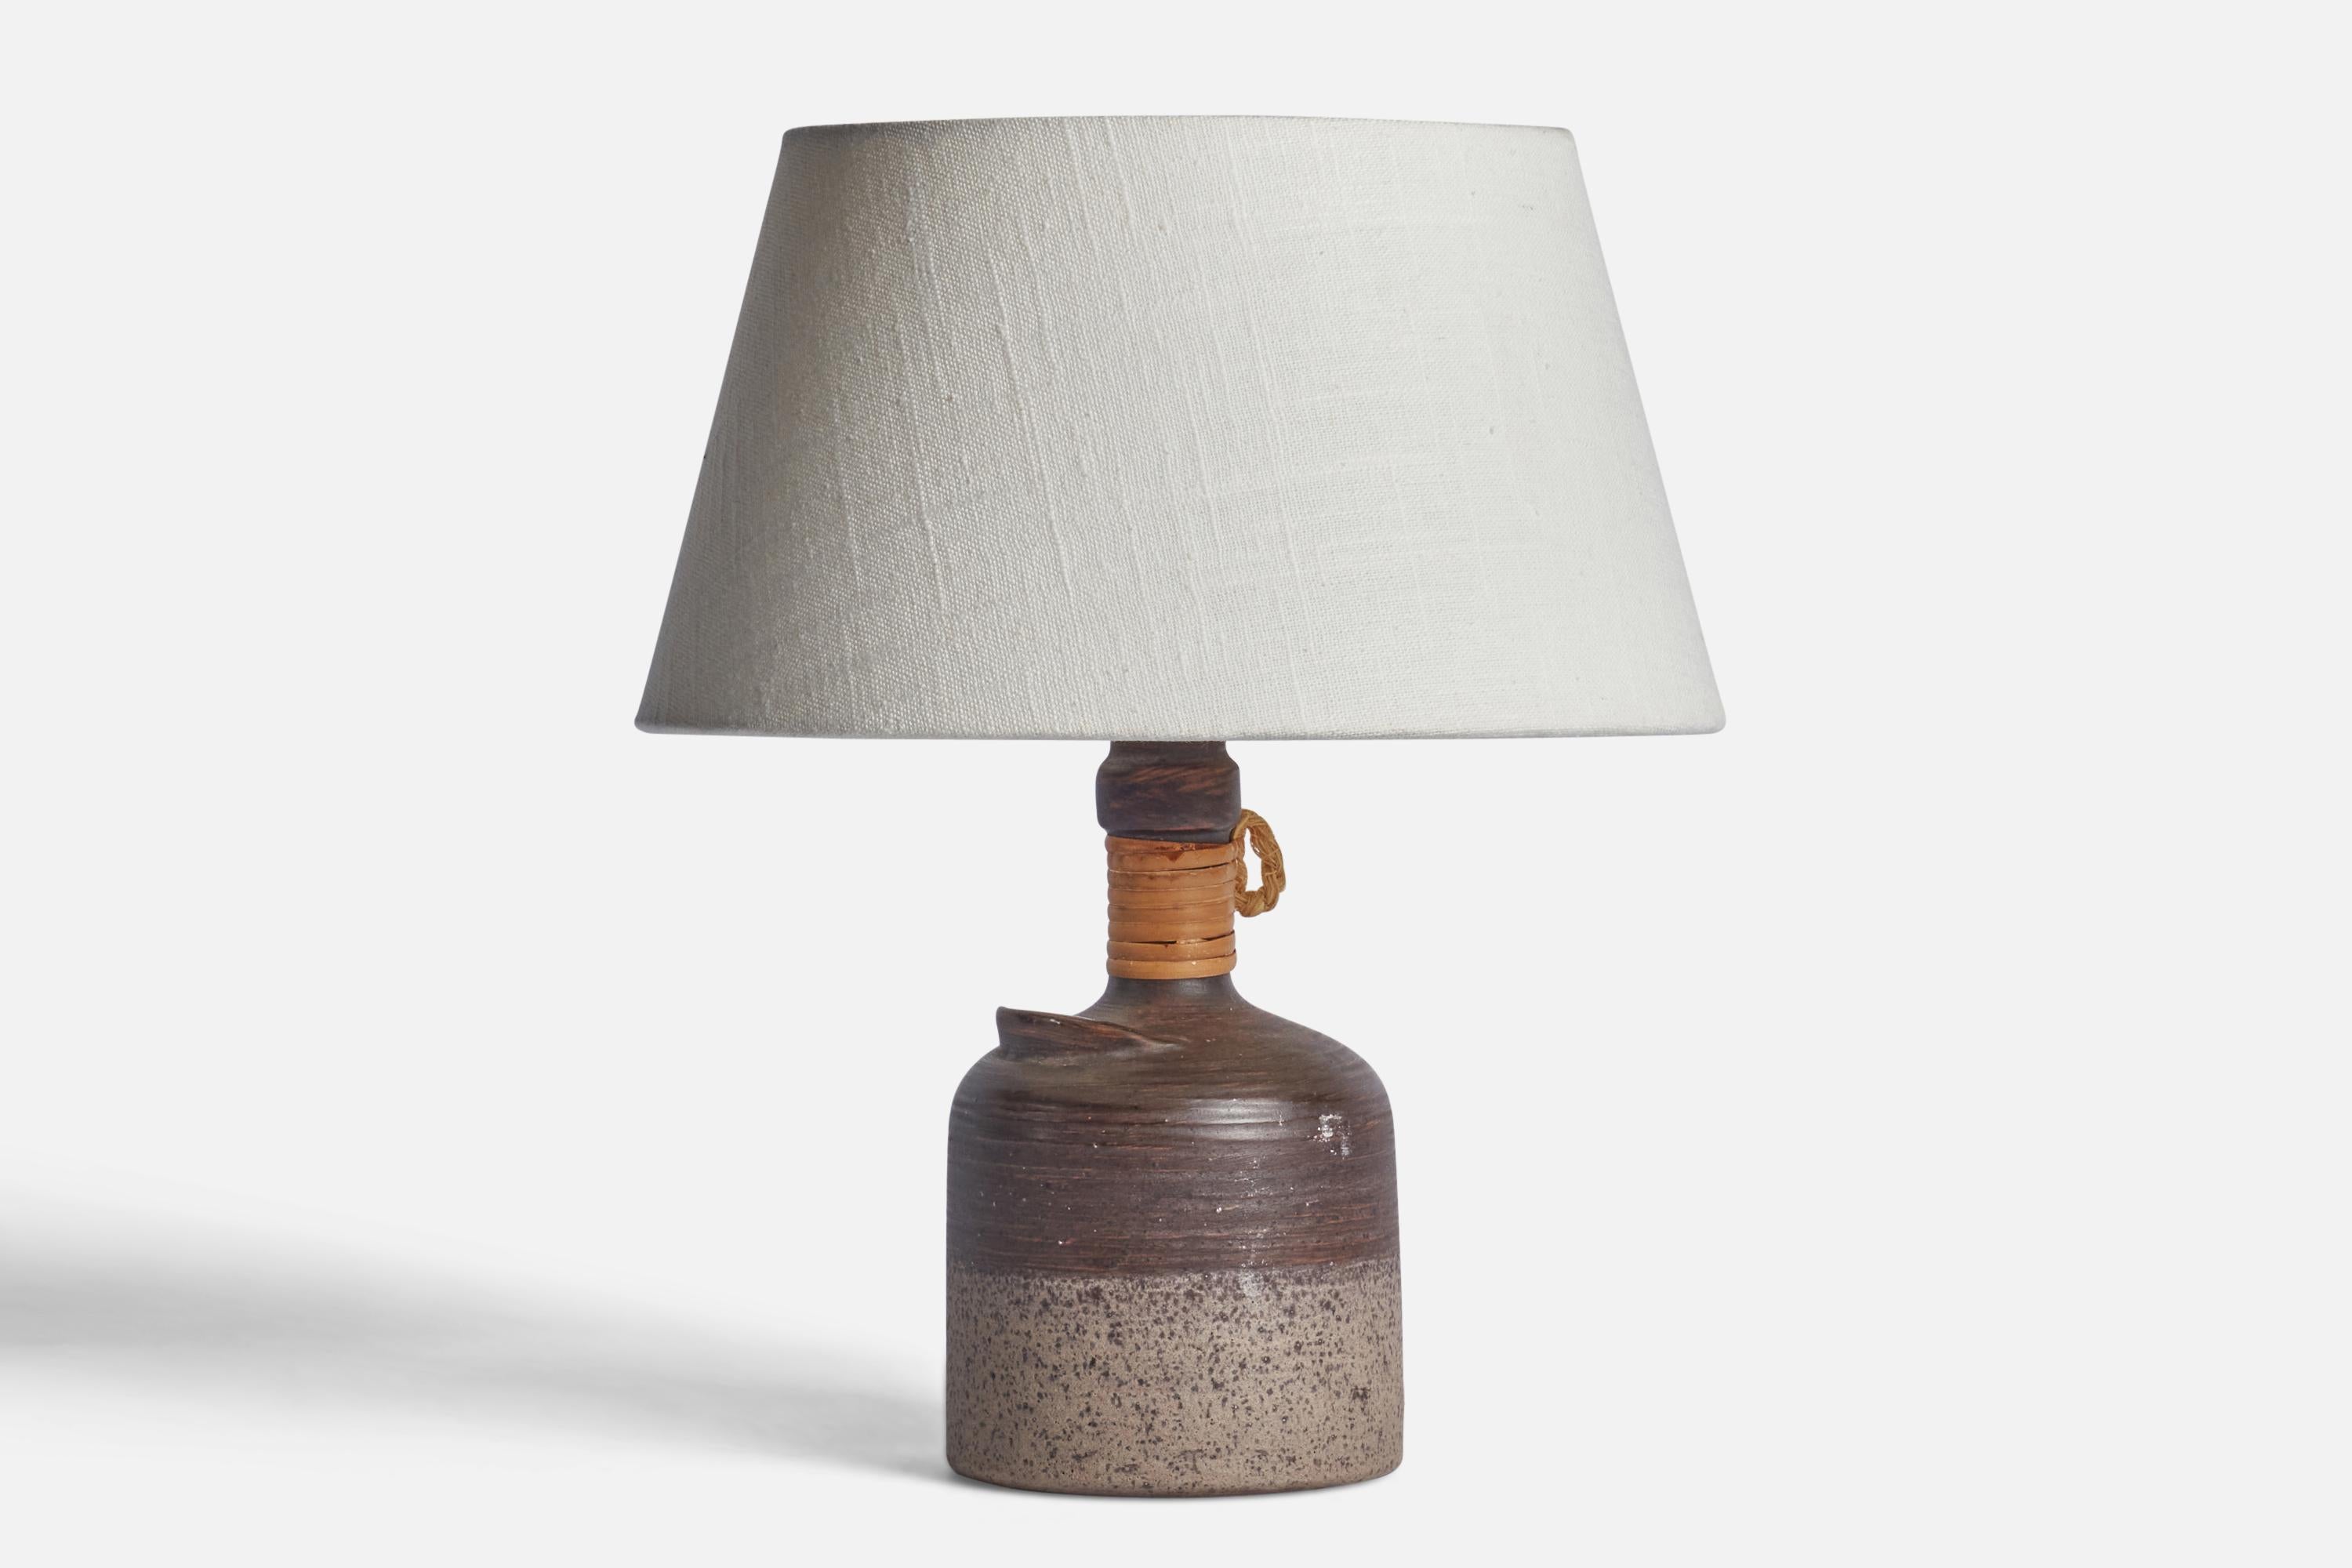 Lampe de table en céramique incisée, rotin et corde, émaillée en gris, conçue par Thomas Hellström et produite par Nittsjö, Suède, c.C. années 1970.

Dimensions de la lampe (pouces) : 9